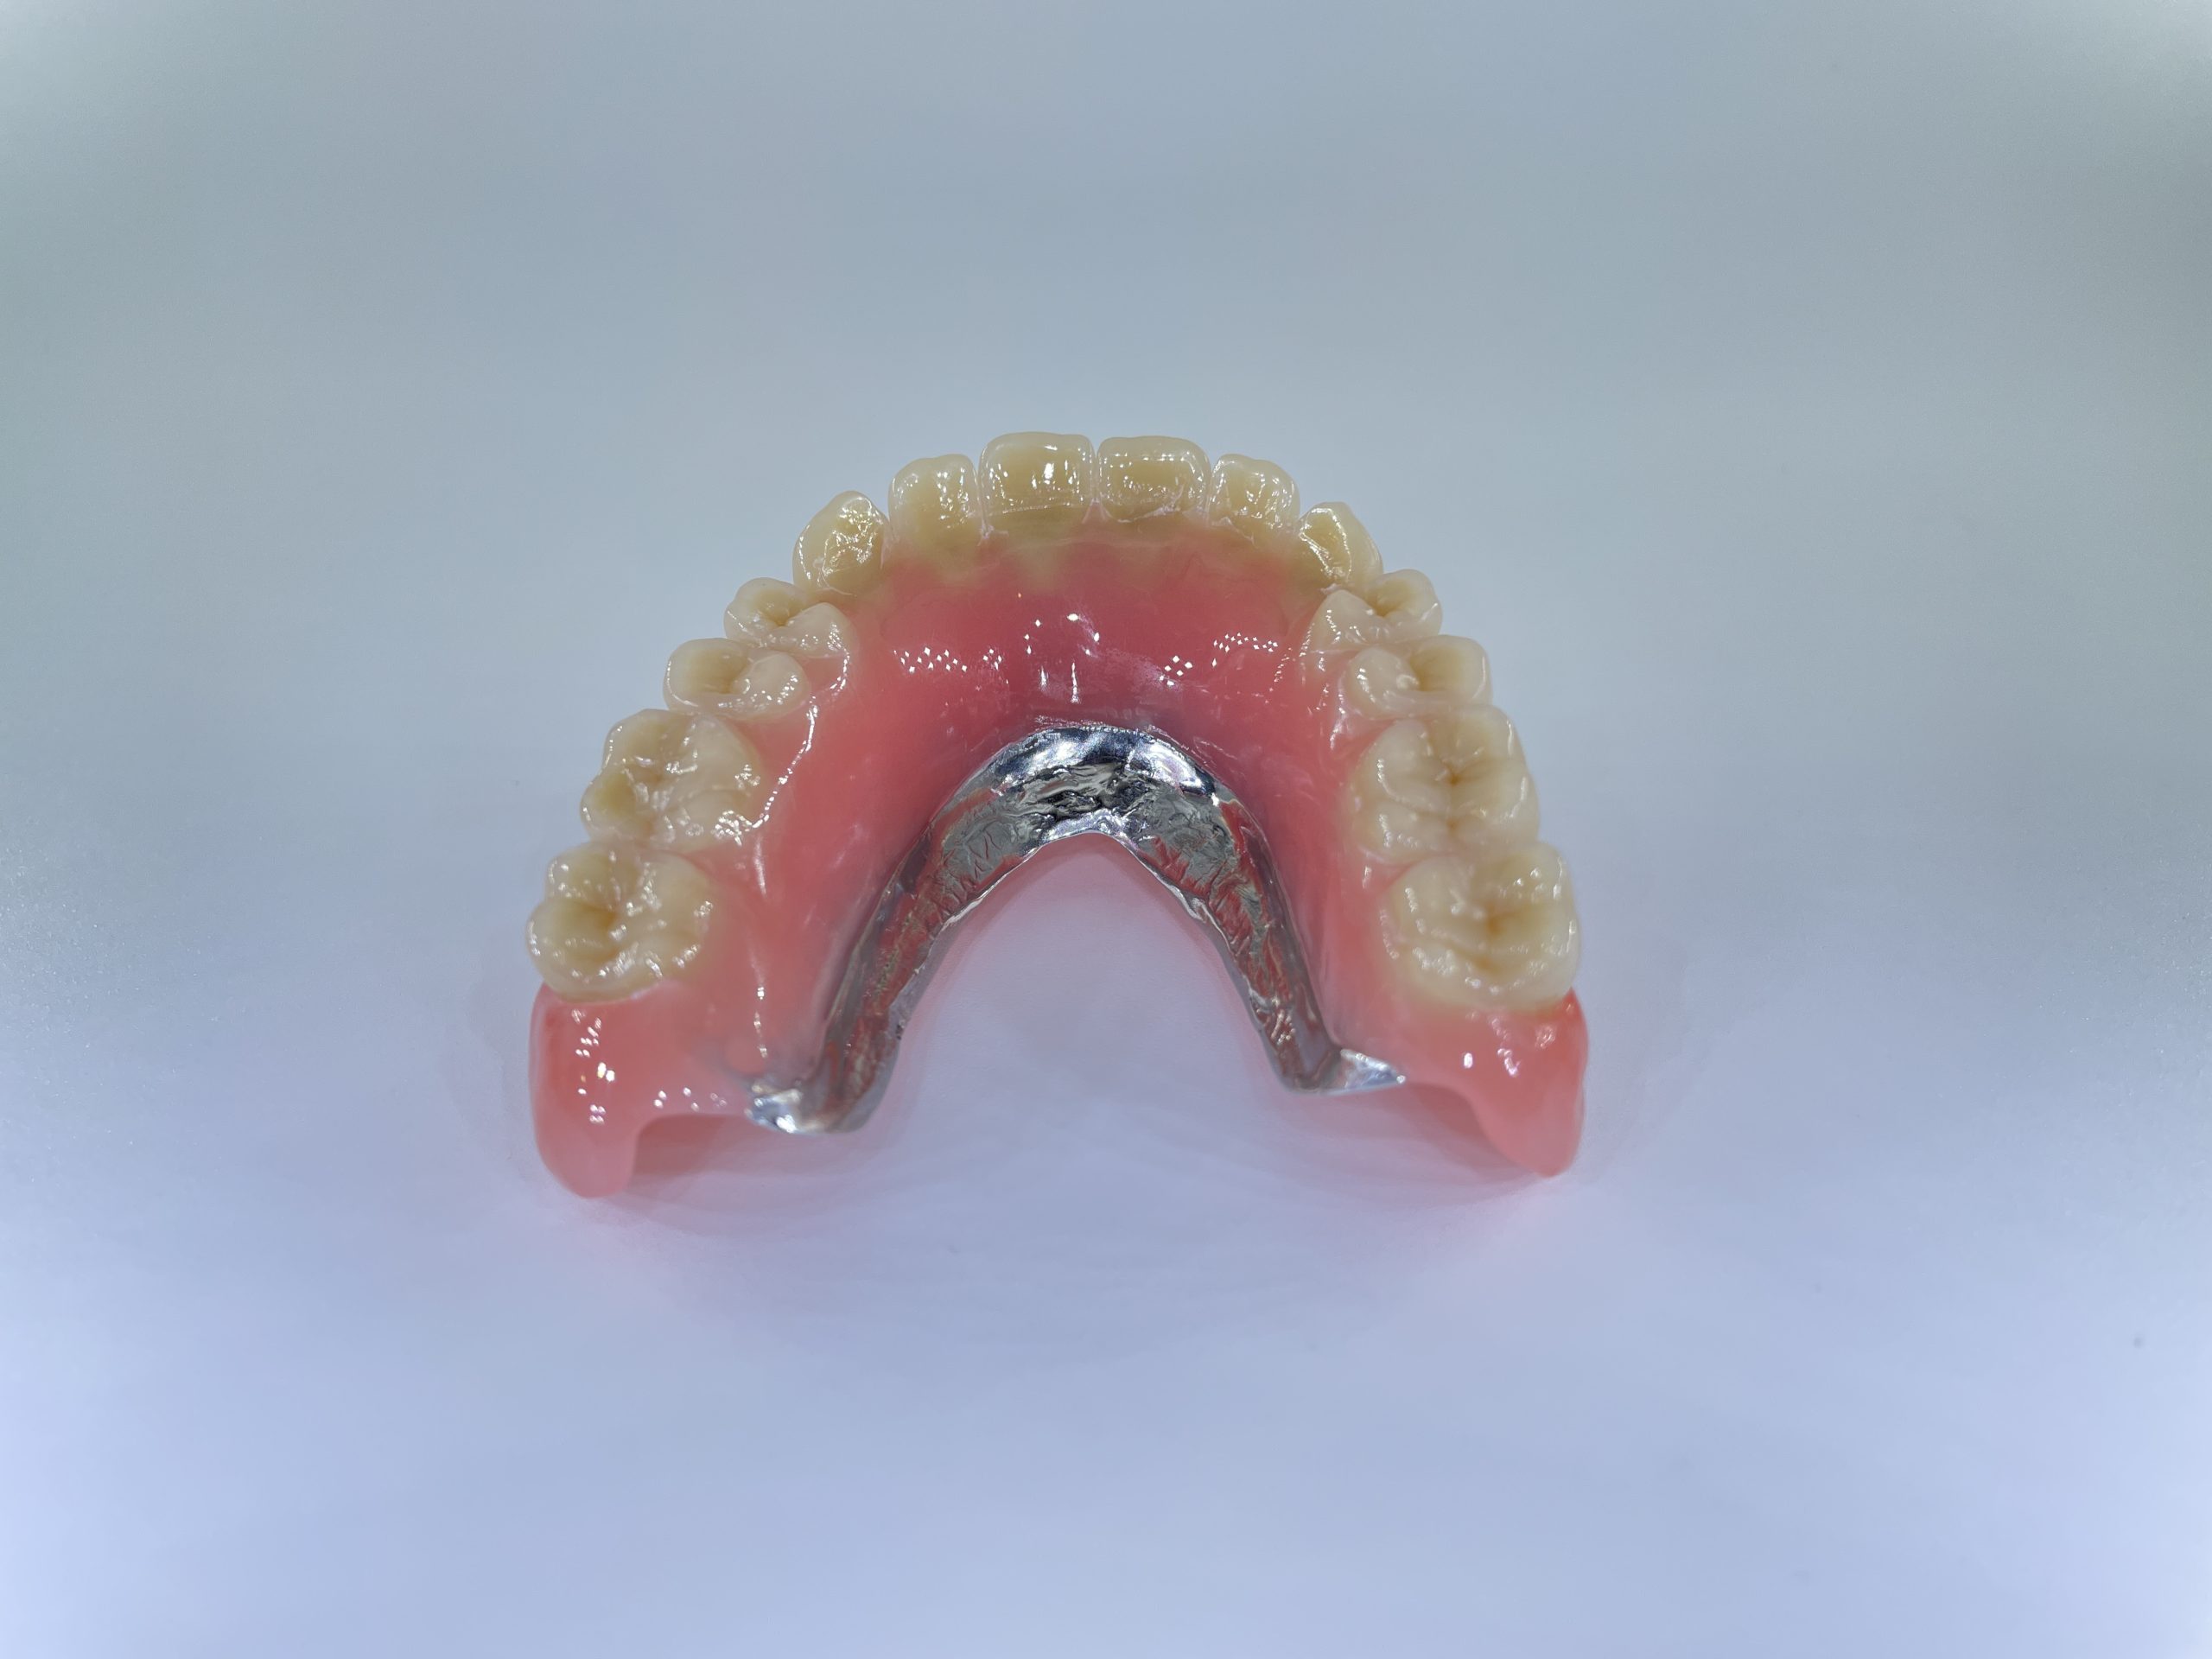 hybrid tandprotese til overmund omvendt bagfra Resultater af færdigeproduceret tandproteser